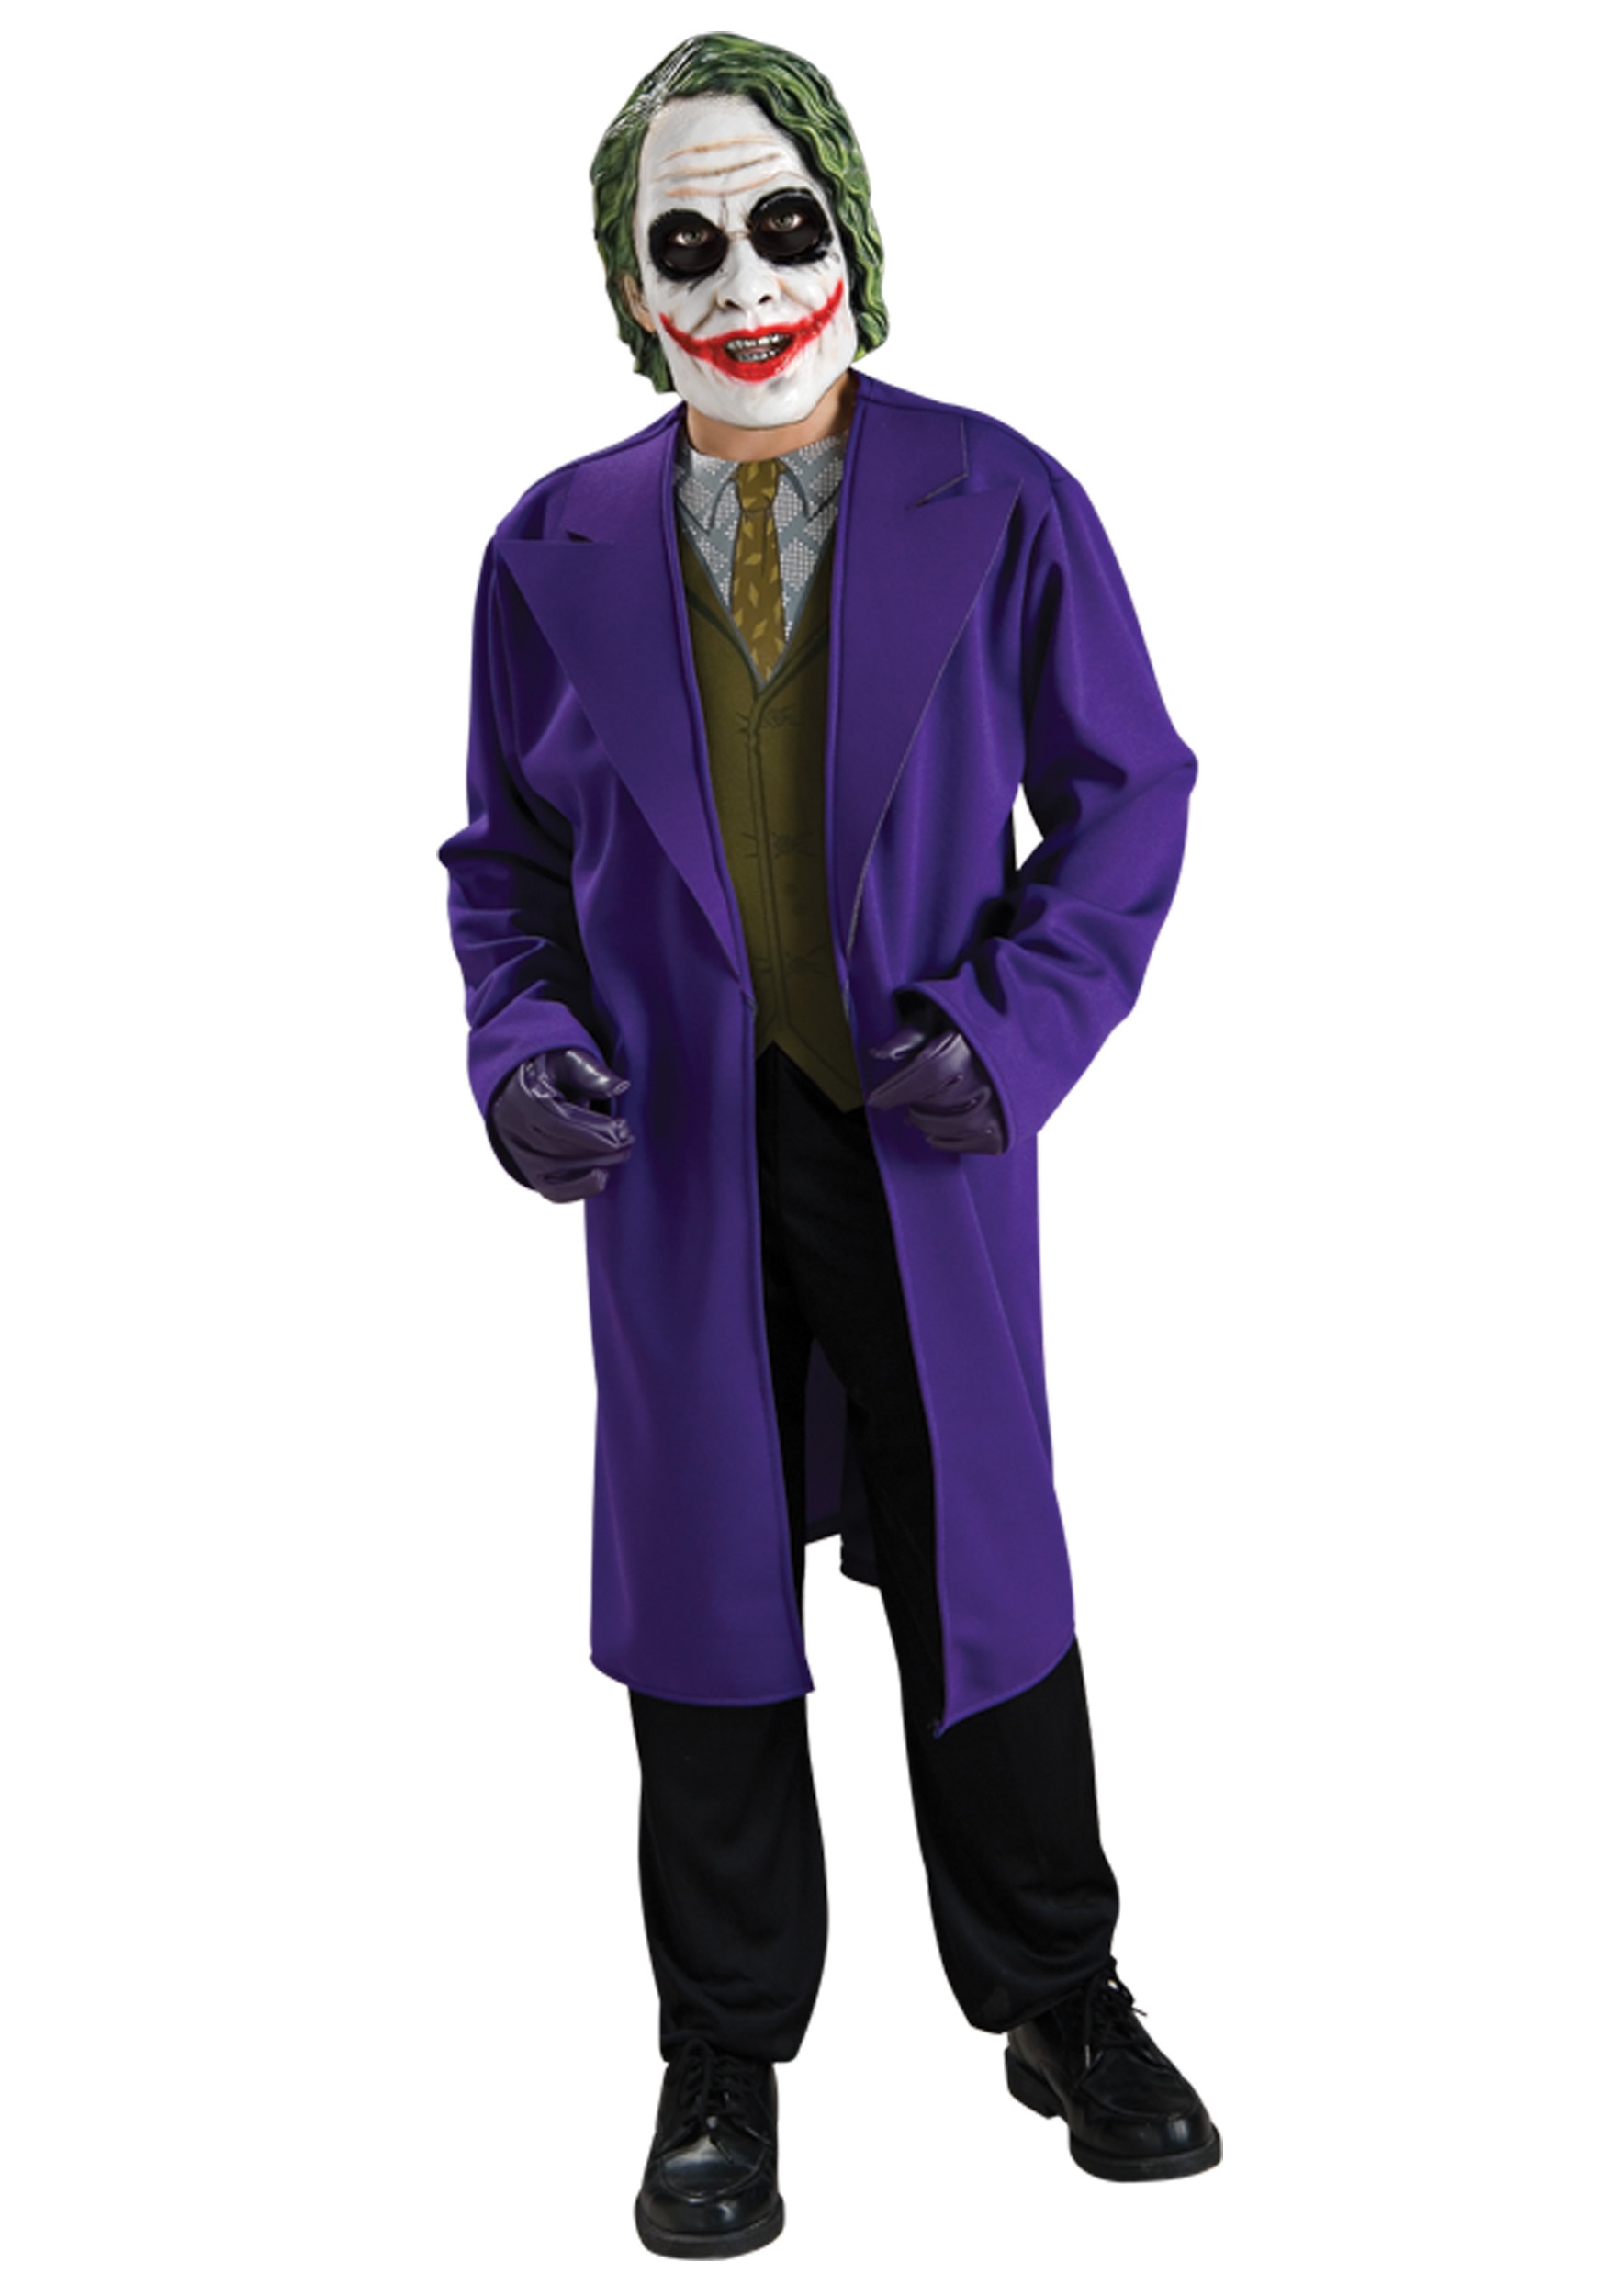 Tween Joker Costume | Joker Halloween Costume for Tweens